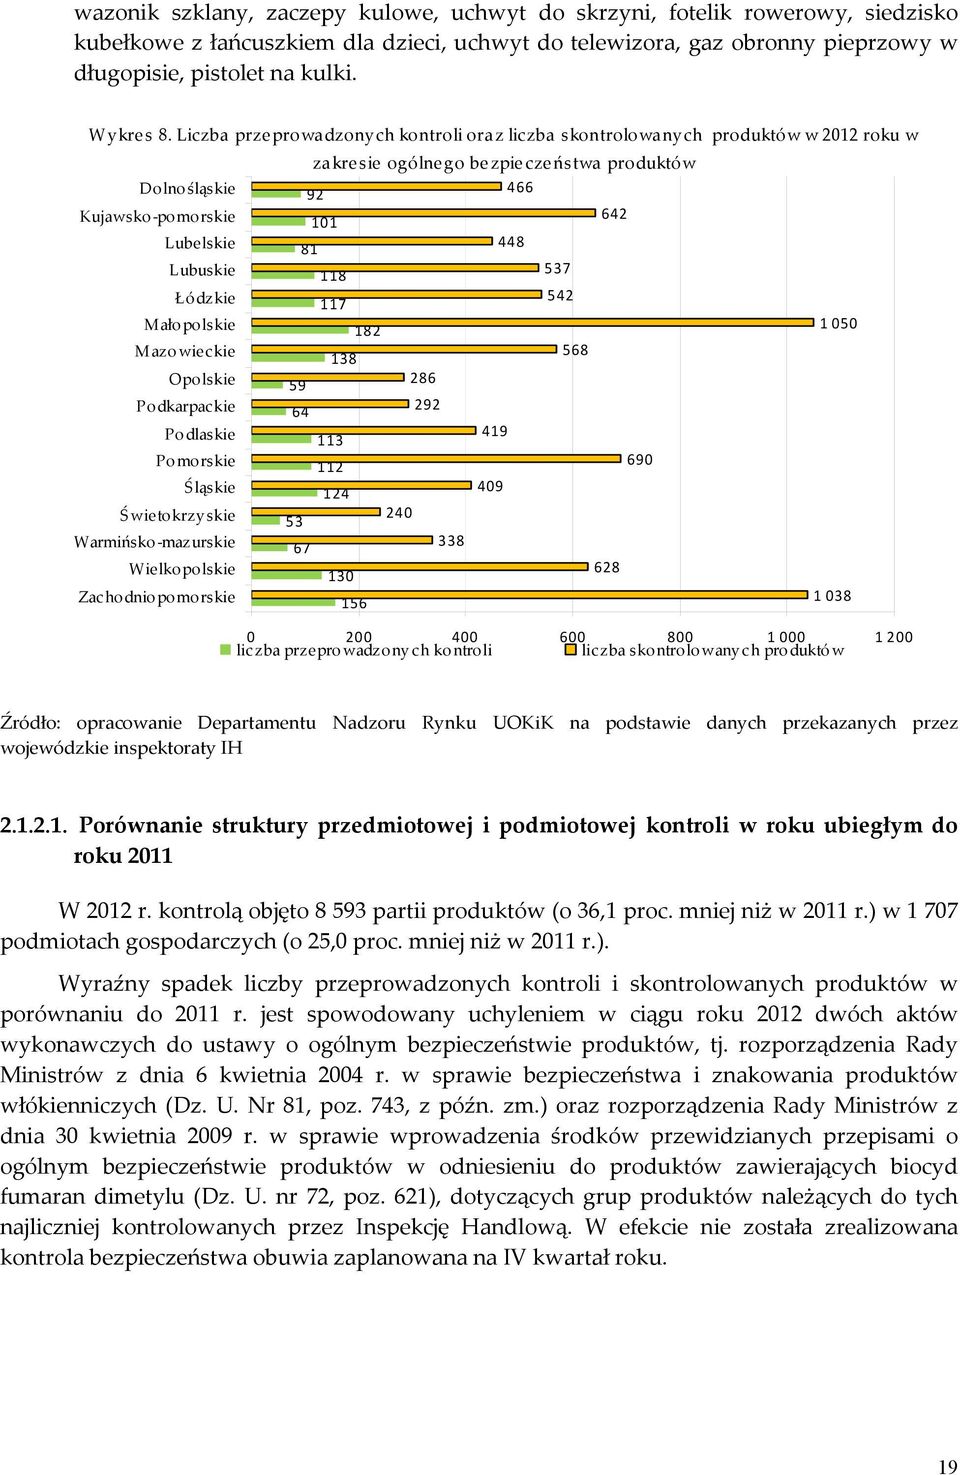 Liczba przeprowadzonych kontroli oraz liczba skontrolowanych produktów w 2012 roku w zakresie ogólnego bezpieczeństwa produktów Dolnośląskie 92 466 Kujawsko-po morskie 101 642 Lubelskie 81 448